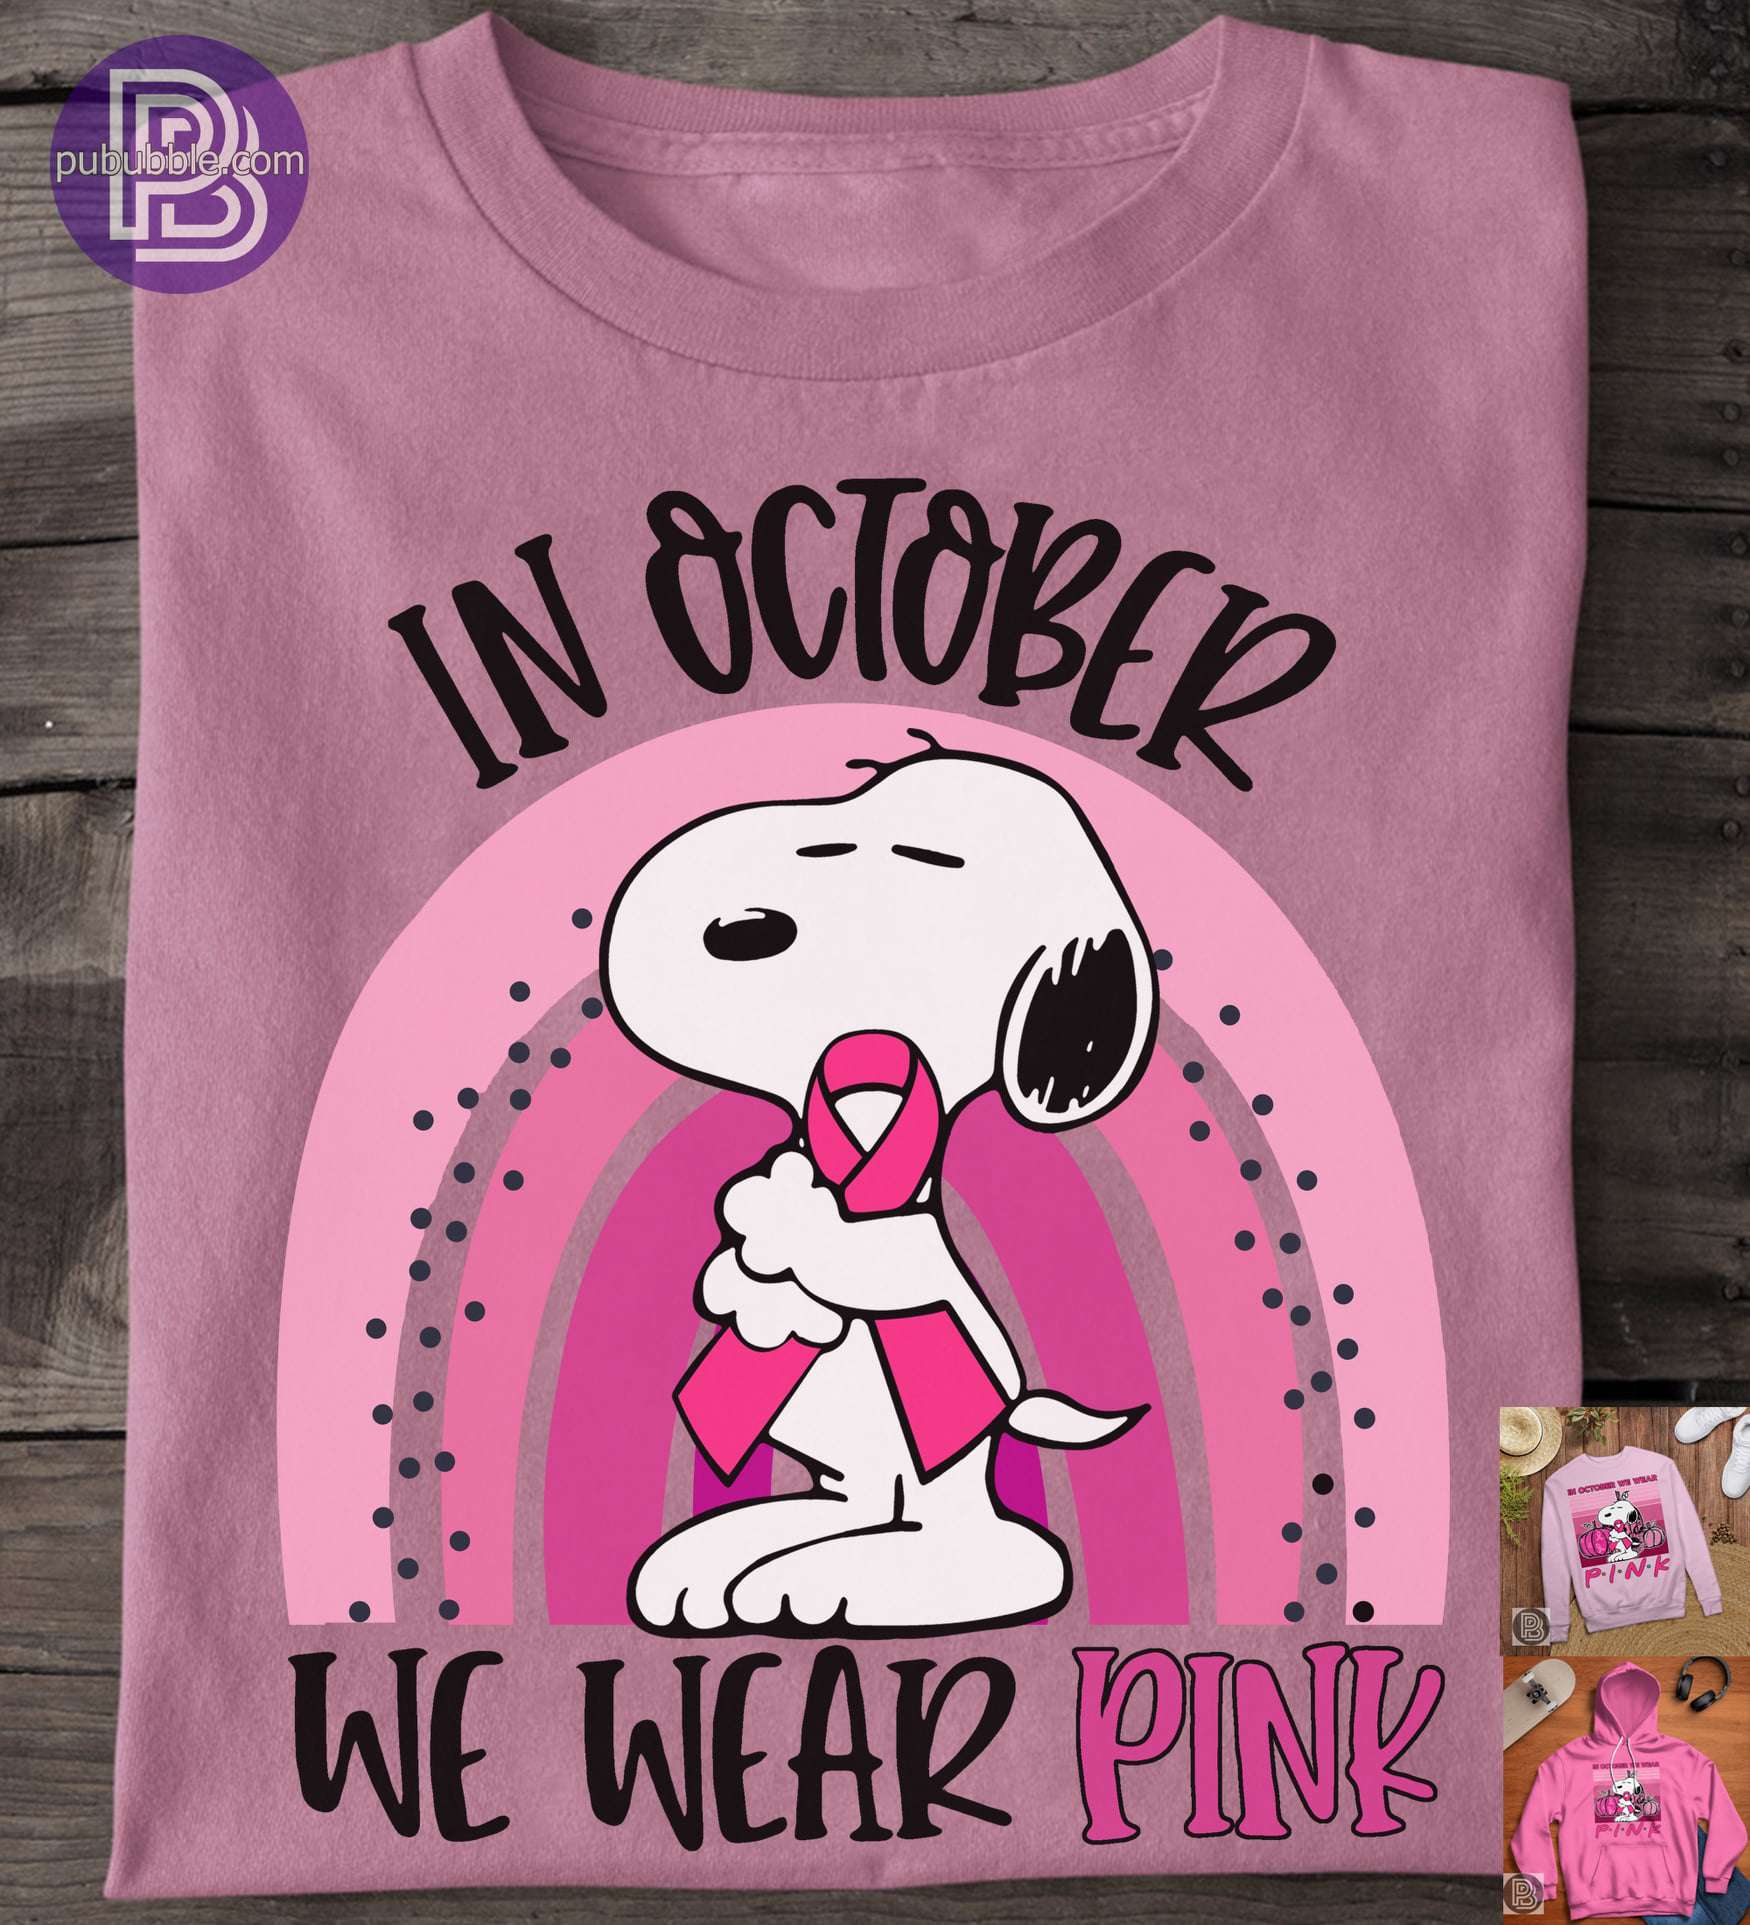 In October we wear pink - October cancer month awareness, snoop dog movie